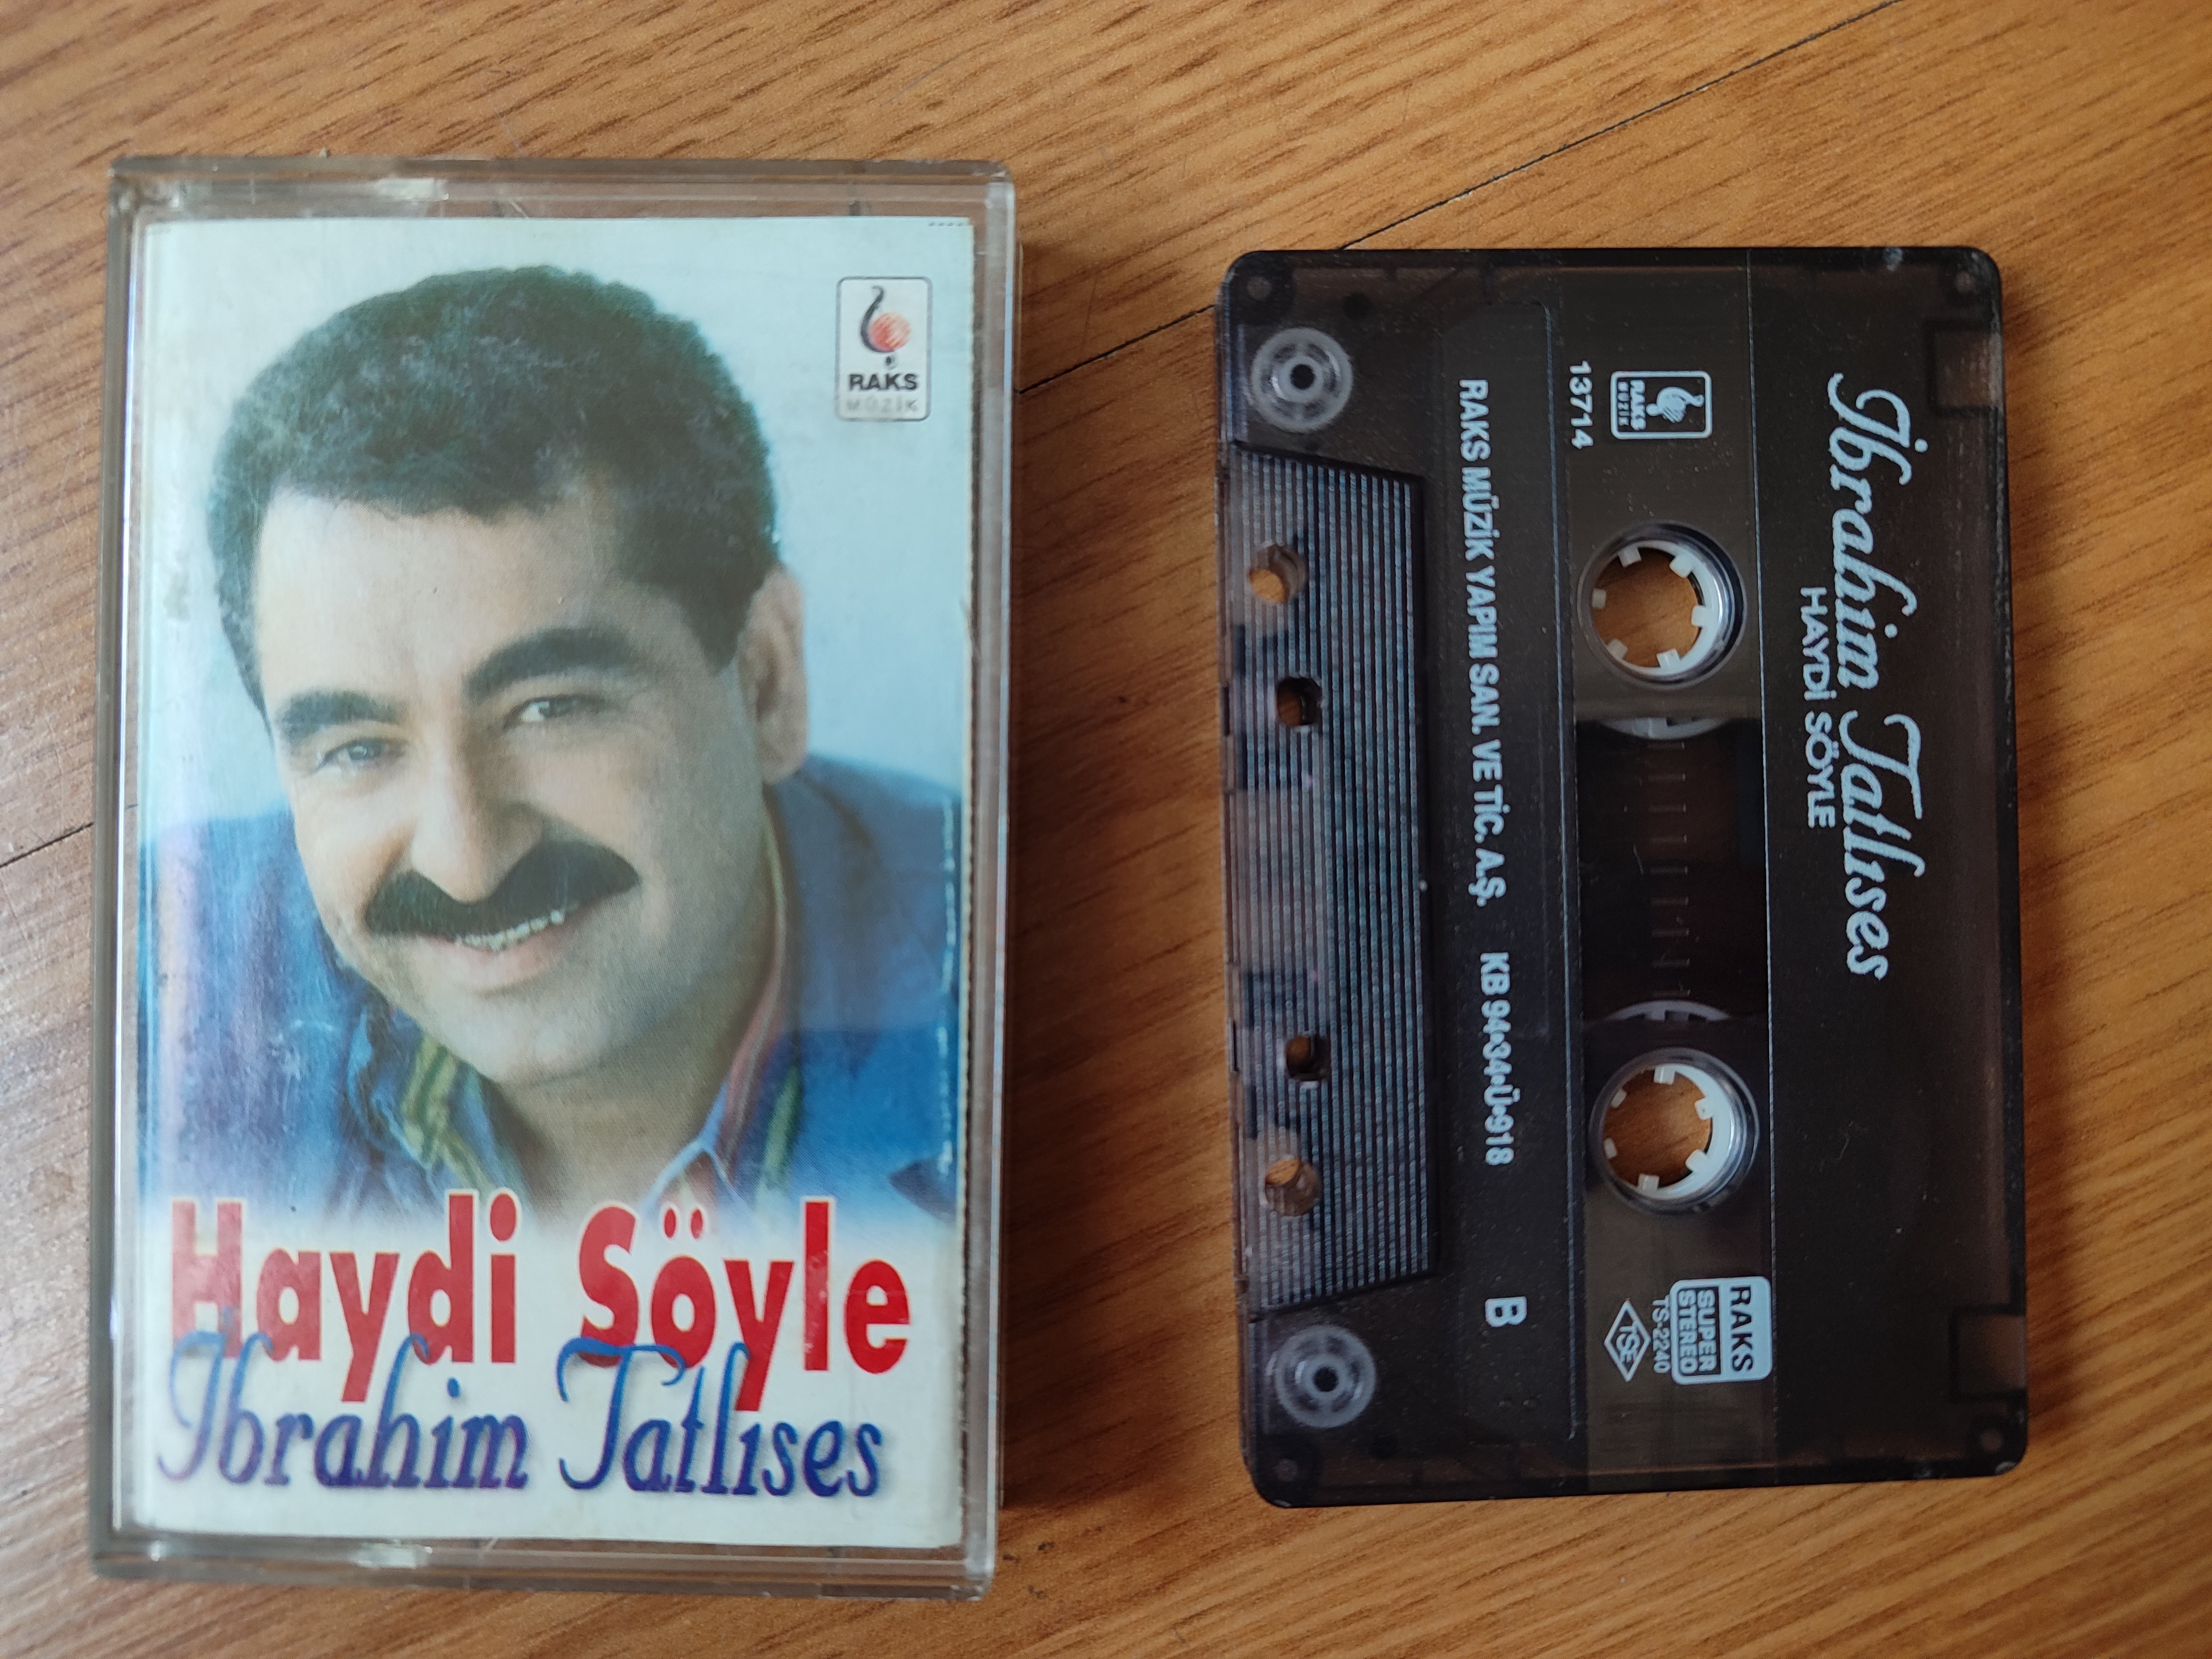 İBRAHİM TATLISES - Haydi Söyle - 1994 Türkiye Basım Kaset Albüm 2. el